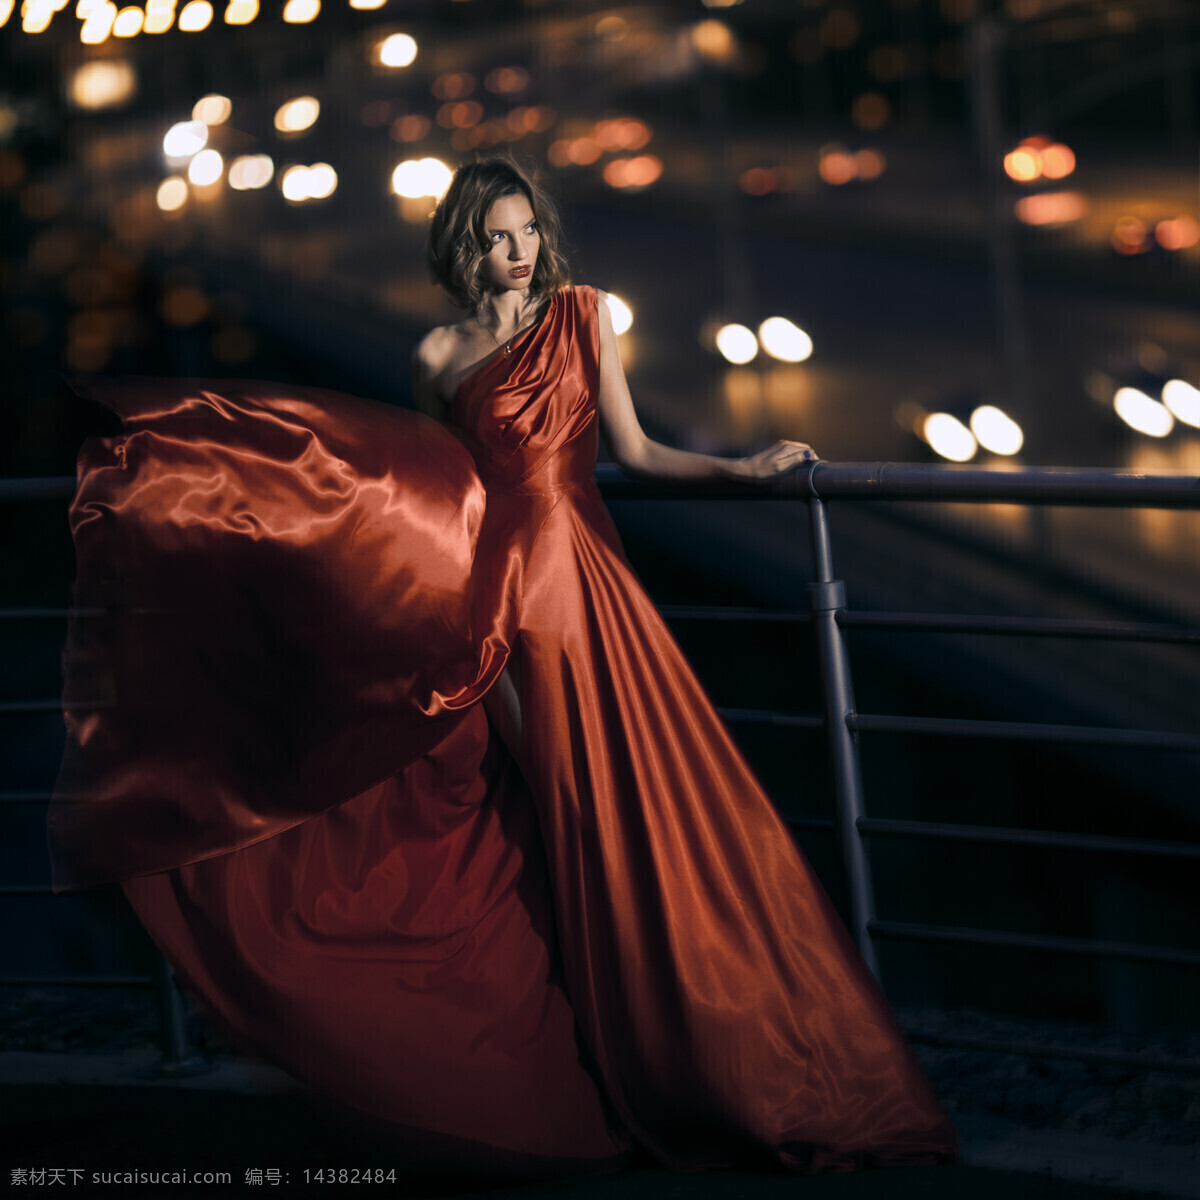 红色 礼服 美女模特 时装模特 服装模特 时尚美女 性感美女 美女写真 外国美女 外国女性 美女图片 人物图片